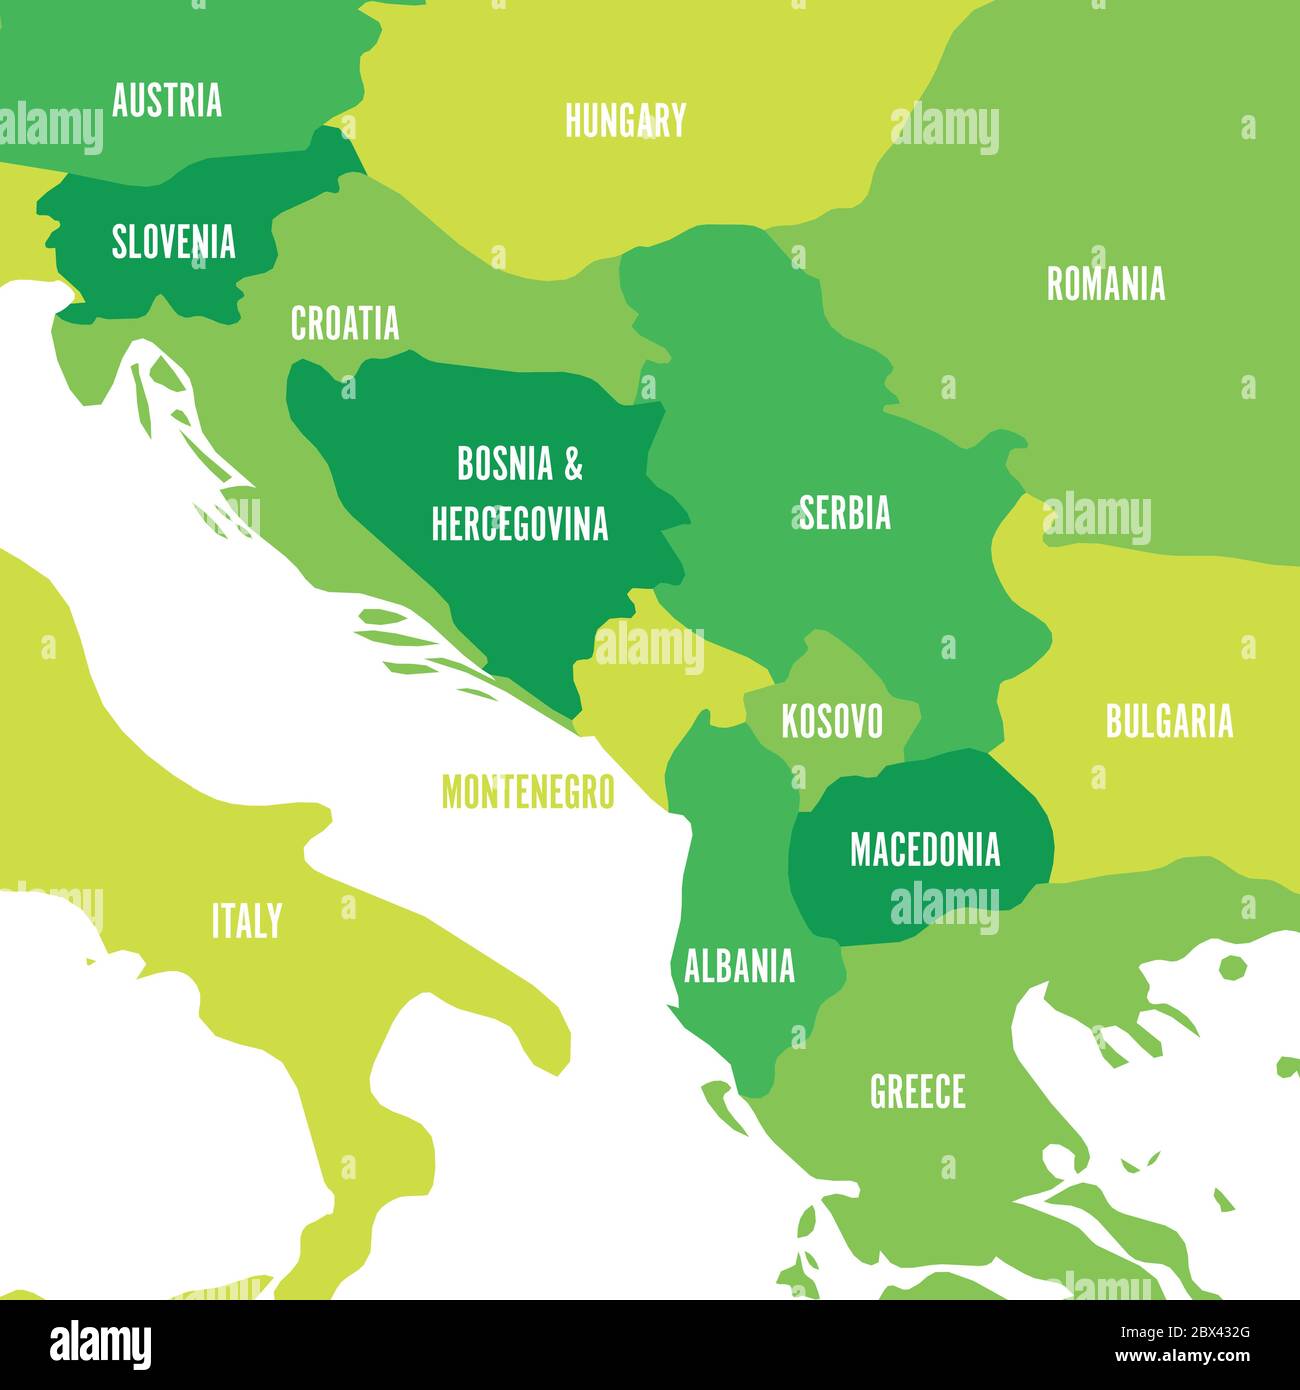 Politische Karte des Balkans - Staaten der Balkanhalbinsel. Vier Schattierungen von grünen Vektor-Illustration. Stock Vektor